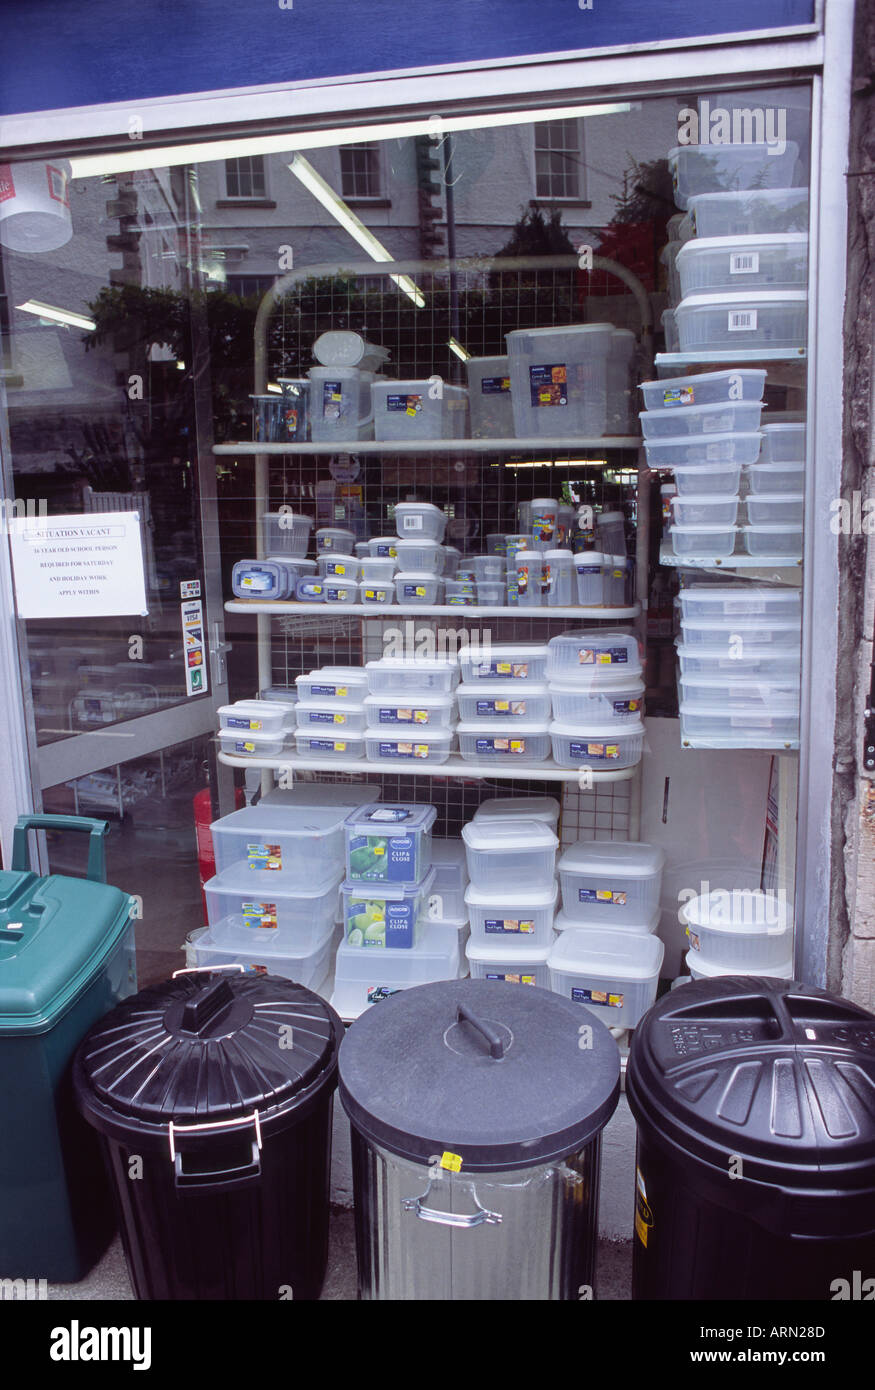 Hardware Shop Window with rubbish bins and plastic storage